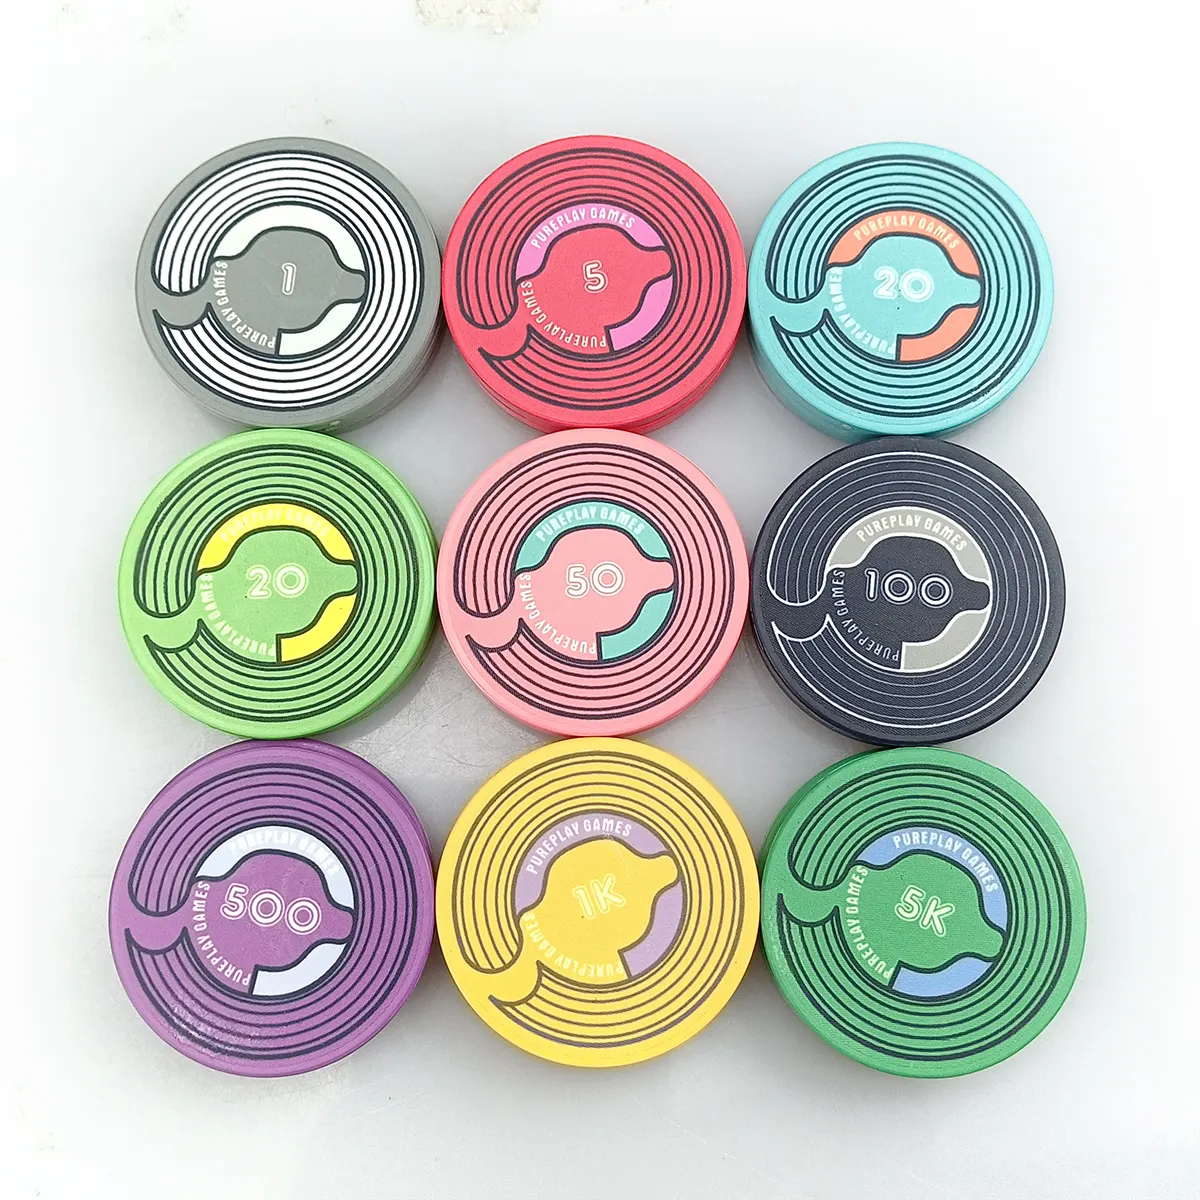 무료 디자인 무료 샘플 10g 세라믹 부지깽이 칩 색깔 초점 Chps 종파에 궁극적인